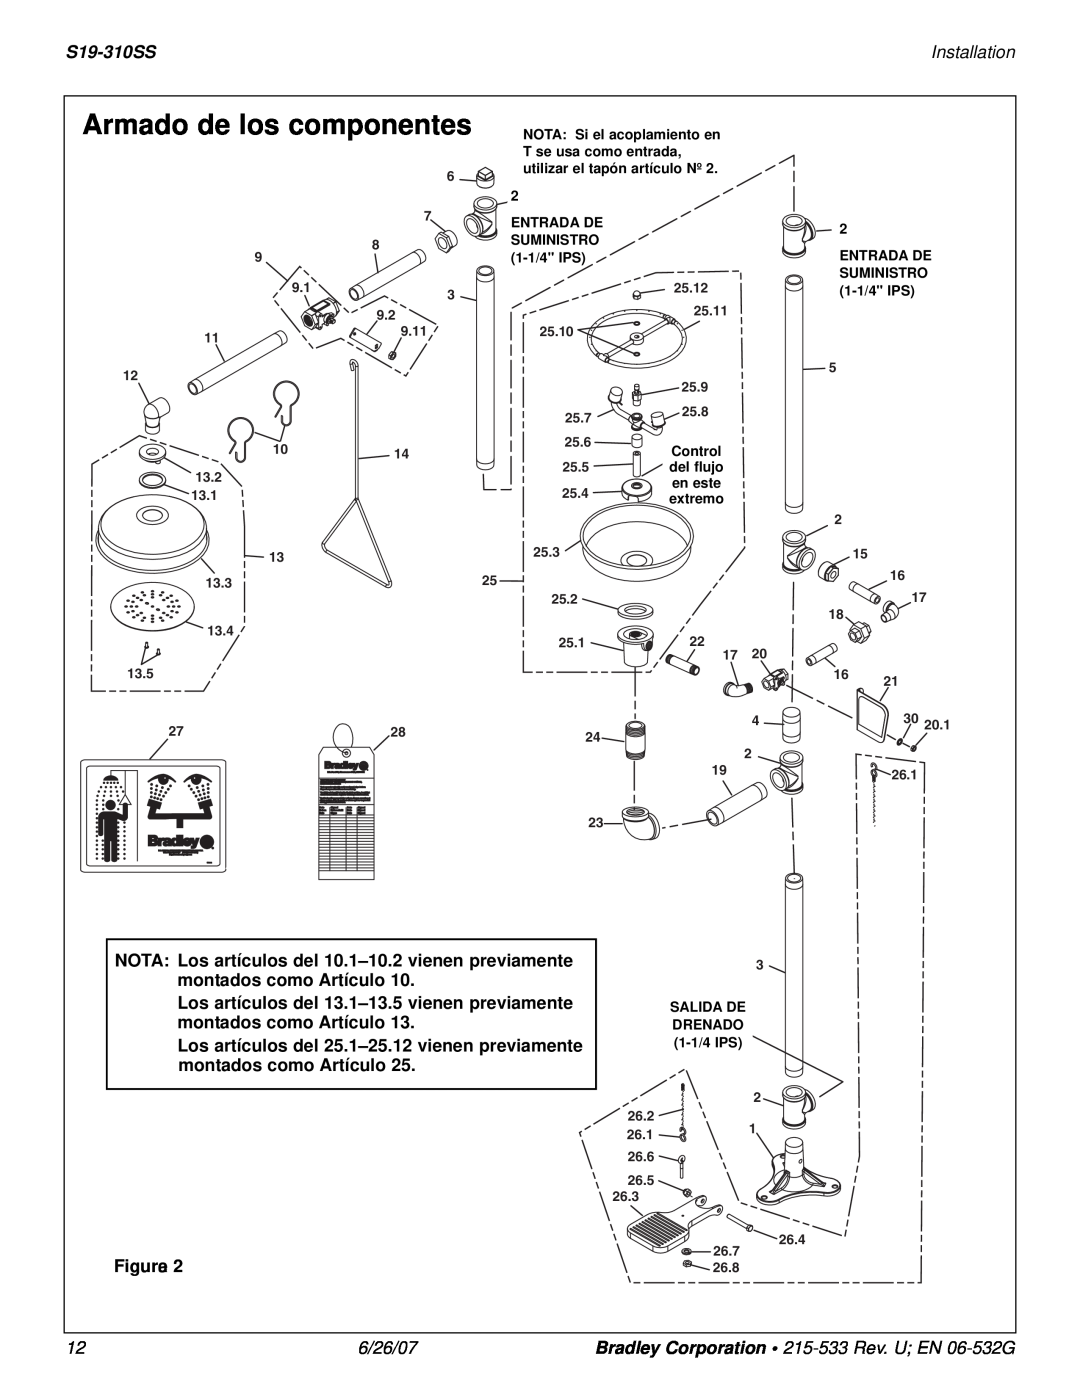 Bradley Smoker S19-310SS installation instructions Armado de los componentes, Installation, Figurae, 6/26/07 